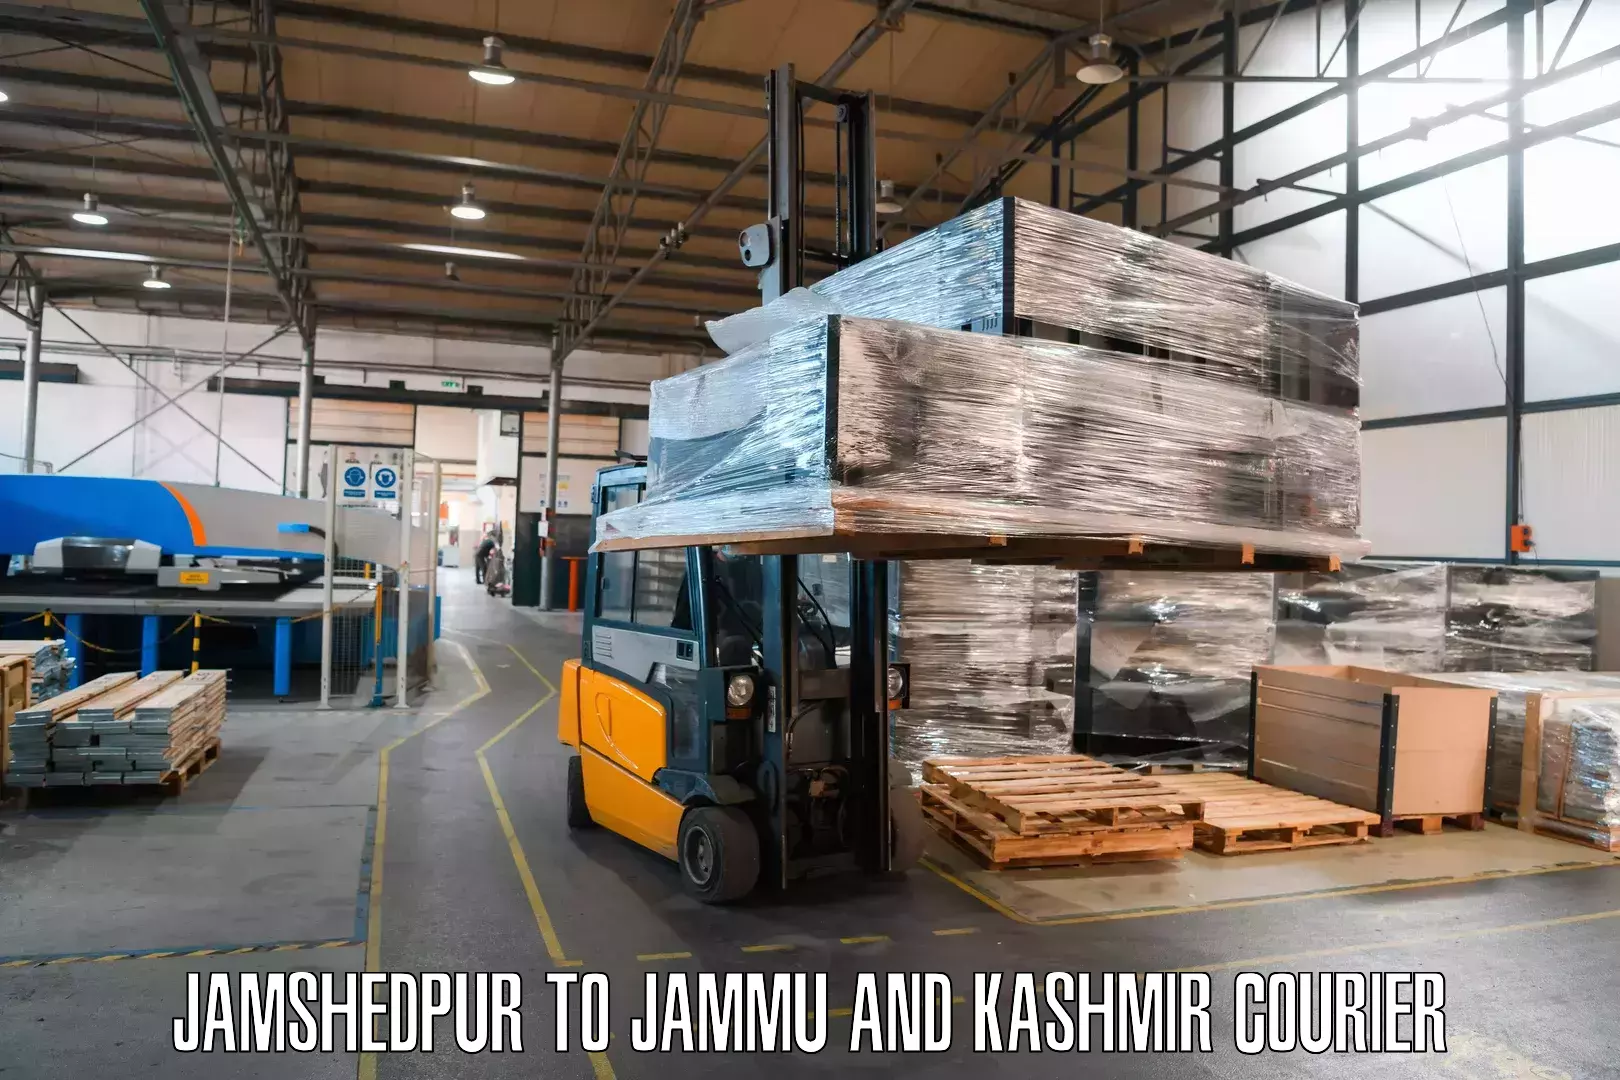 Premium courier services Jamshedpur to Shopian